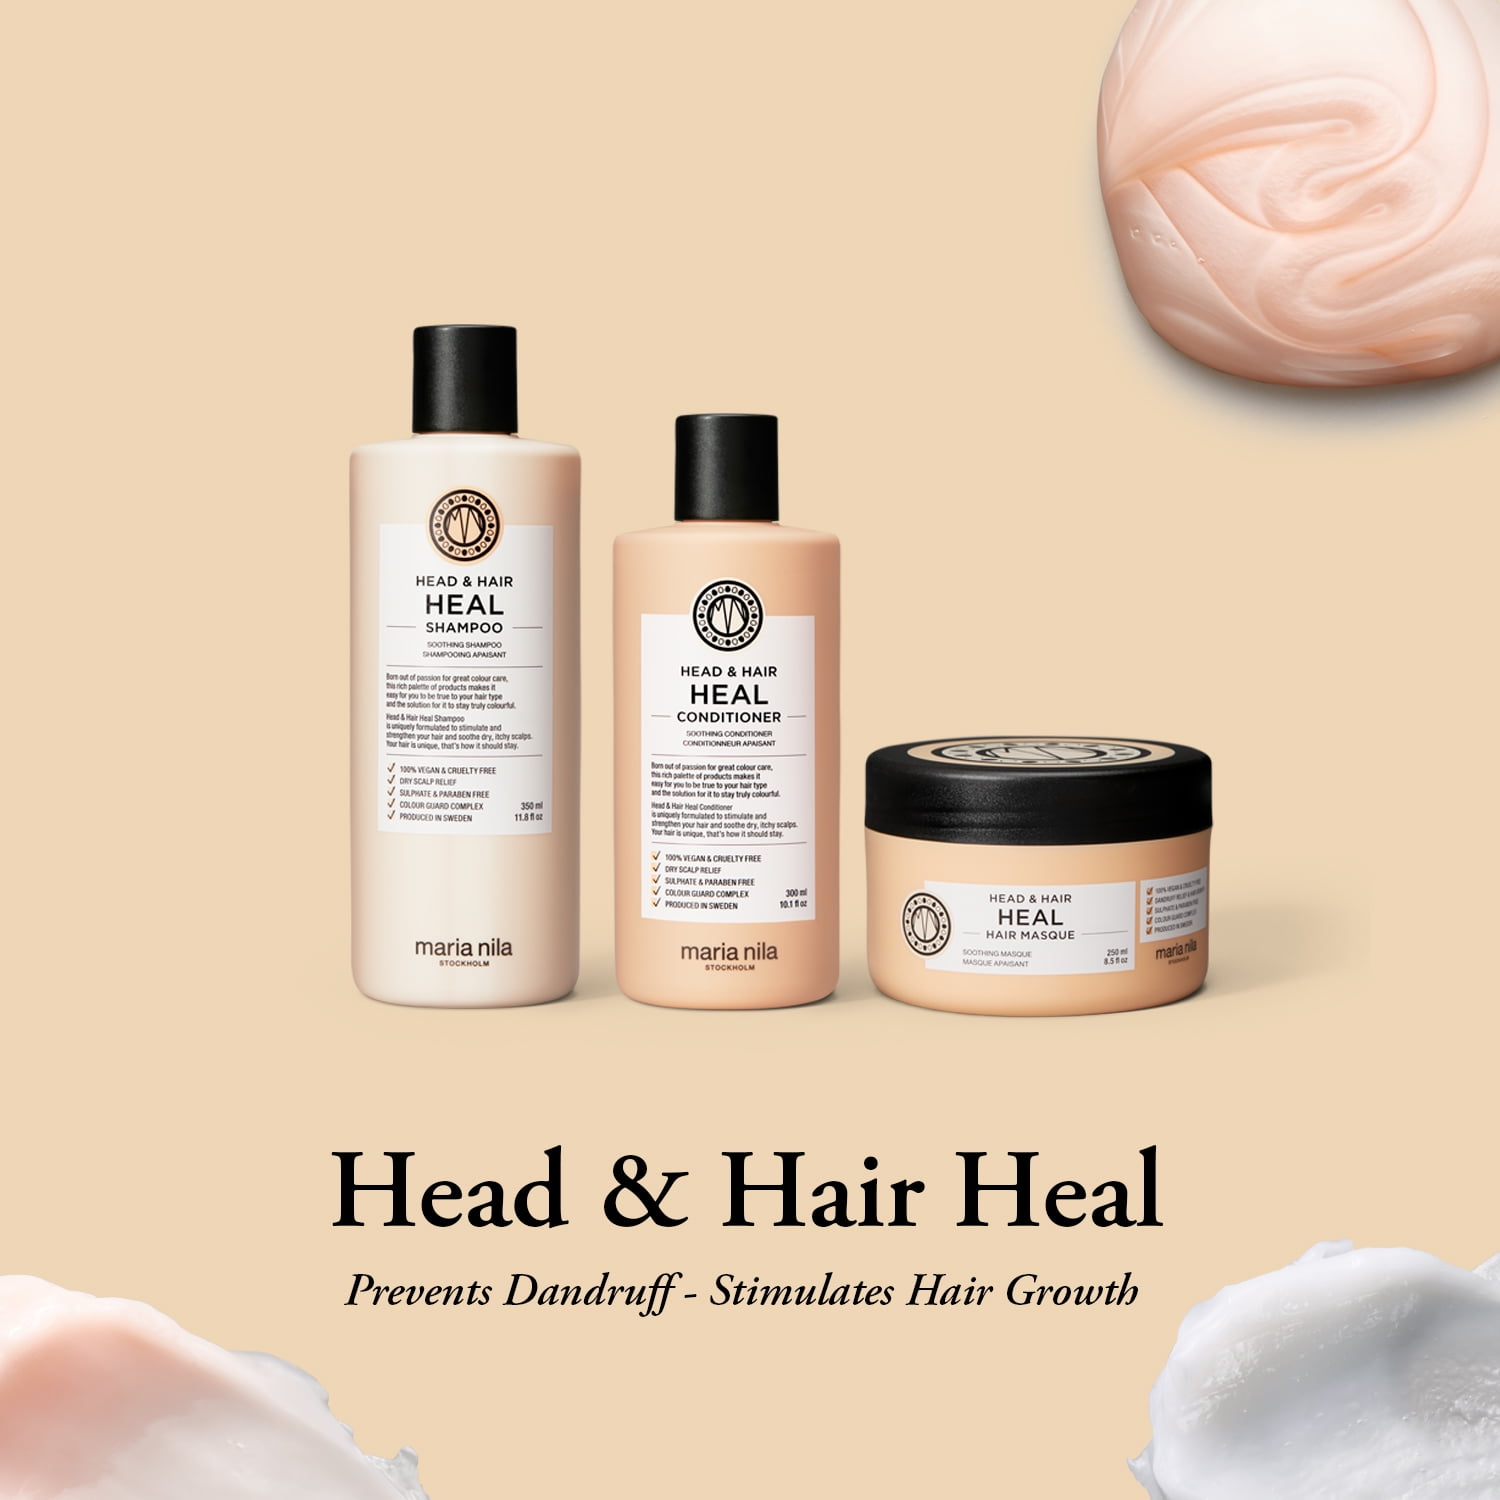 Maria Nila Head & Hair Heal Shampoo, 3.4 Fl Oz / 100 ml, Prevents Scalp & Hair Growth, 100% Vegan & Sulfate/Paraben free - Walmart.com